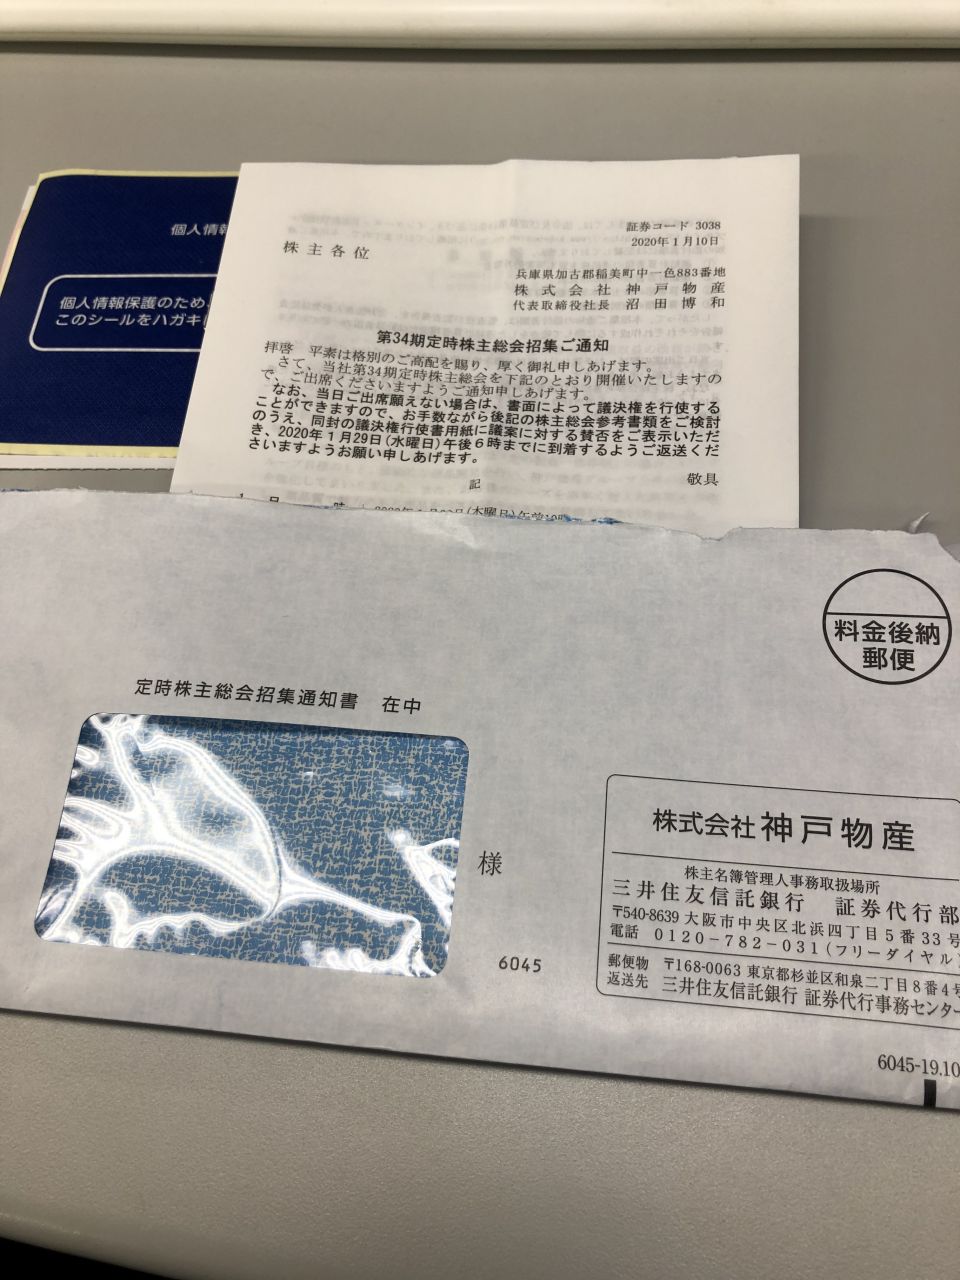 業務スーパー(神戸物産)の株主総会へのチケット(議決権行使書)が郵送ポストに入っていた。 | メサイア・ワークス